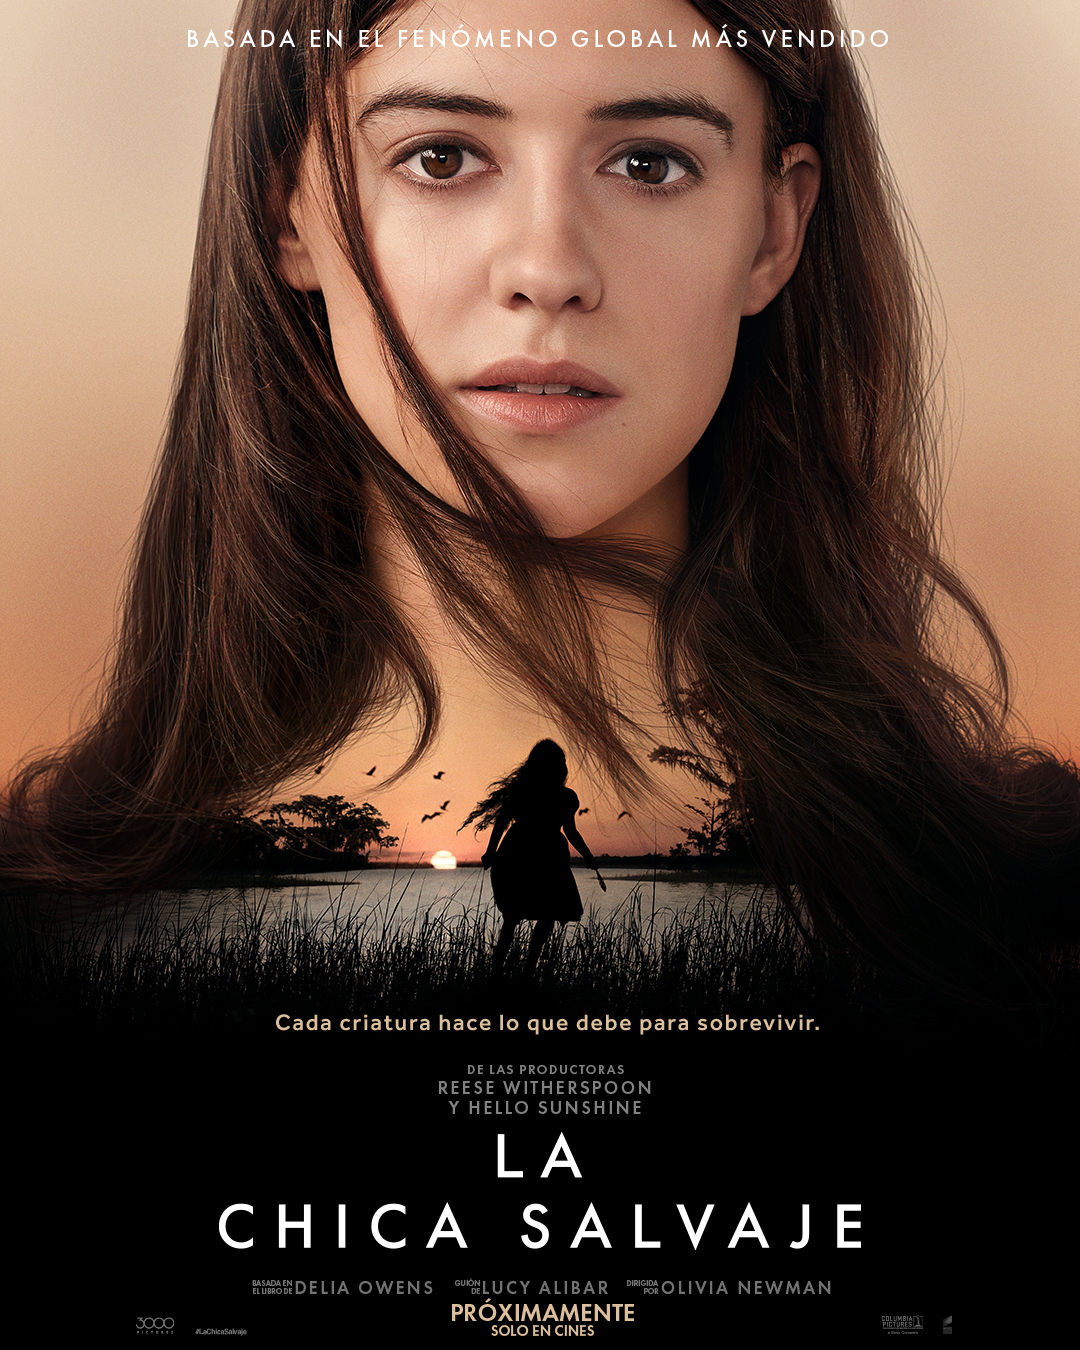 Póster oficial de "La chica salvaje", que llegará a comienzos de septiembre a los cines de Latinoamérica. (Sony Pictures)